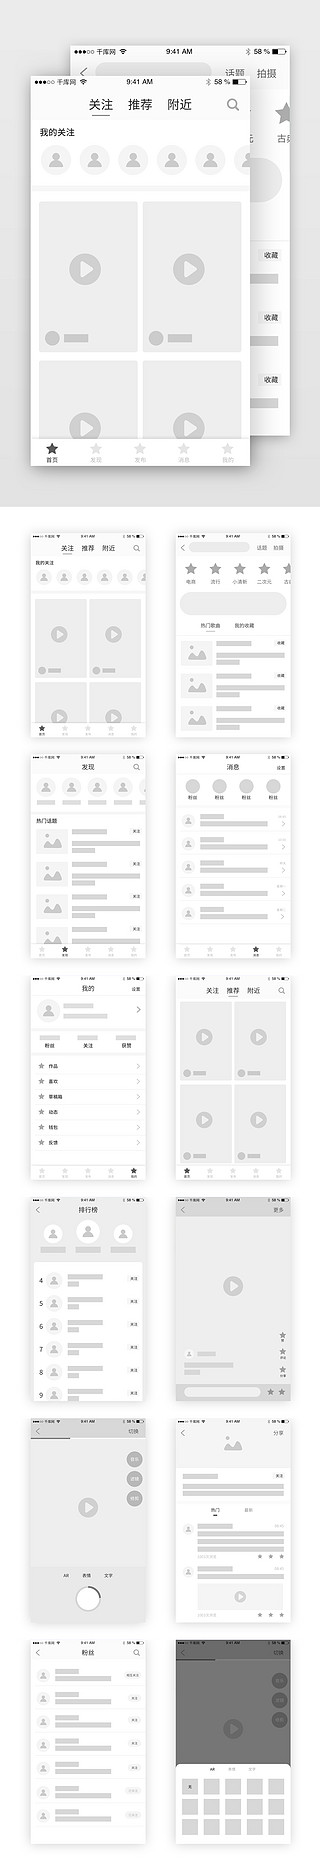 画册排版UI设计素材_短视频直播排版模板原型图